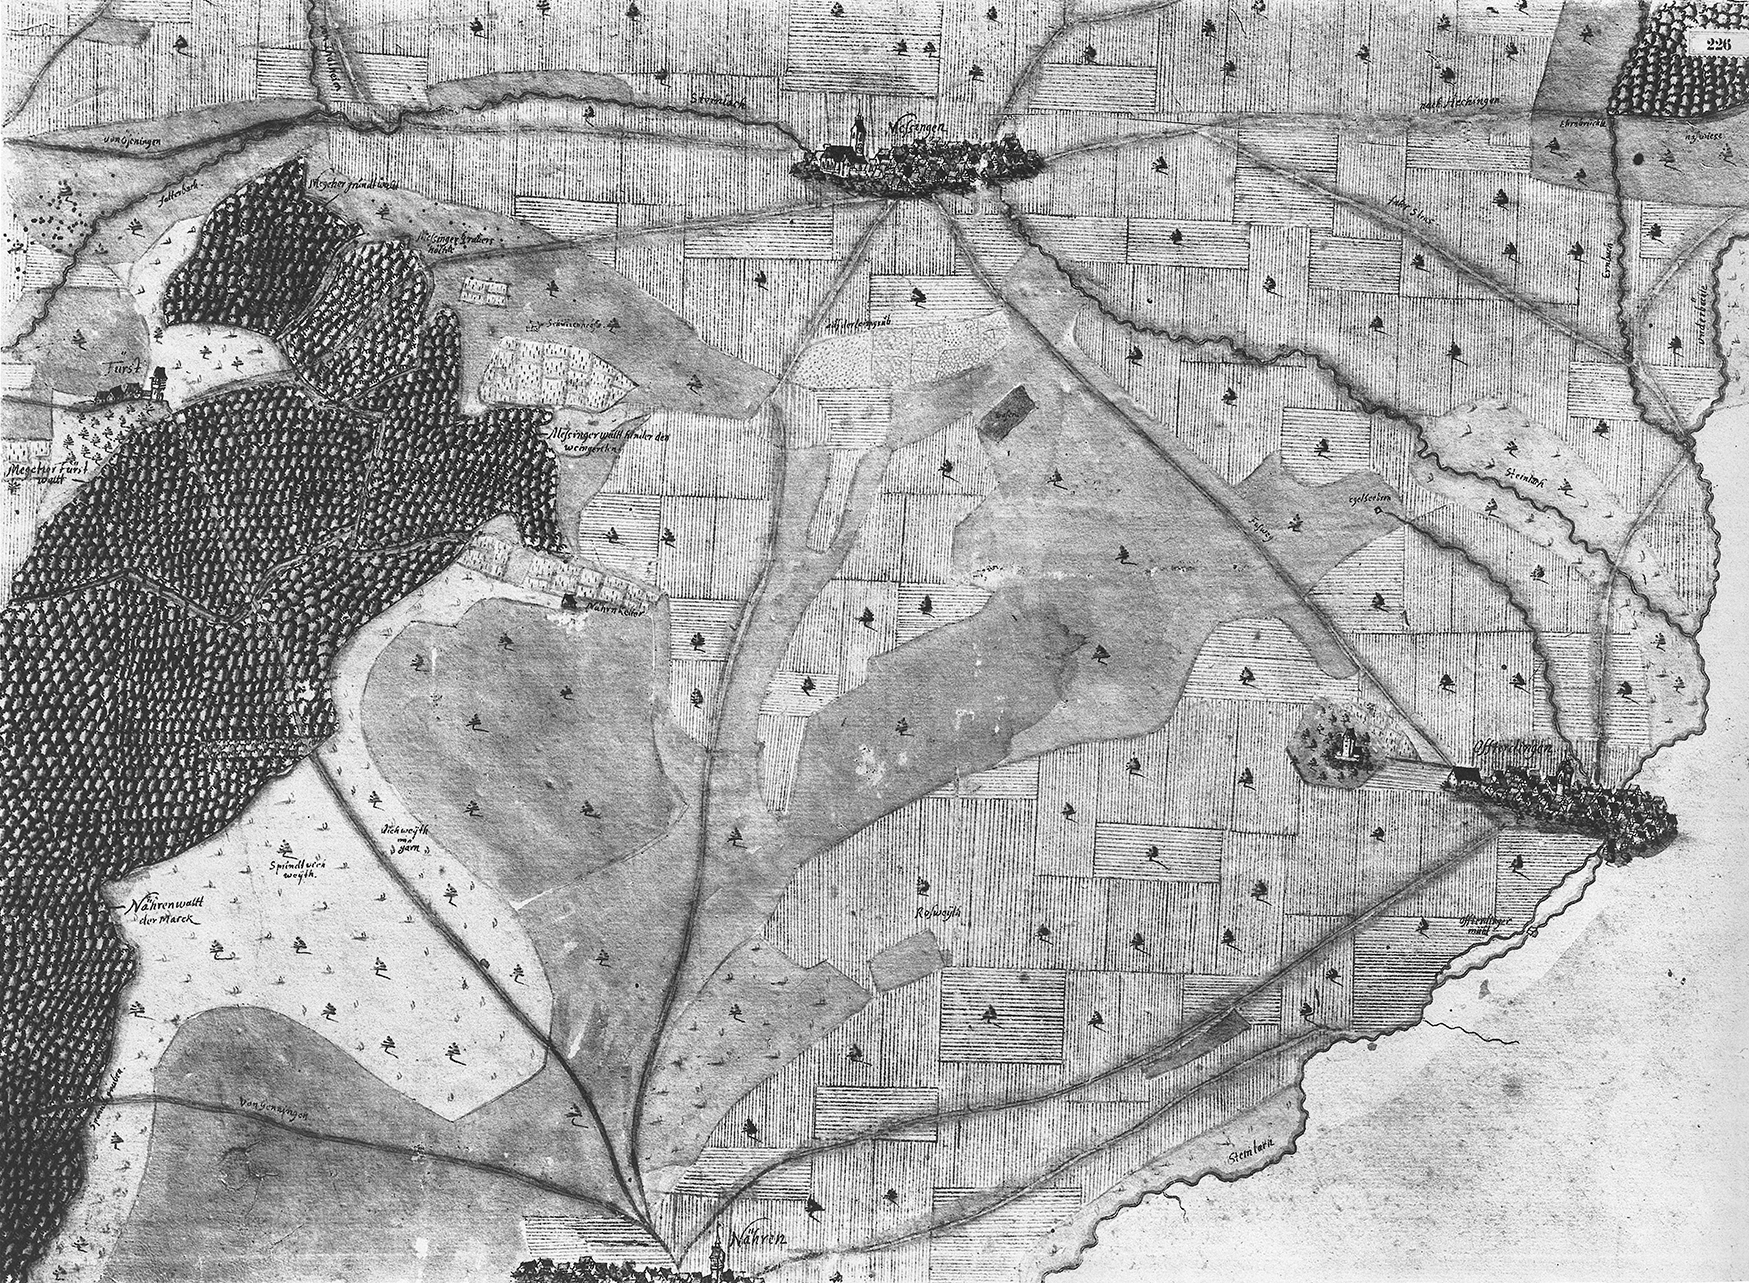 Abb. 1: Die nach Süden ausgerichtete Flurkarte von Andreas Kieser von 1683 zeigt die Landschaftsgliederung zwischen Nehren (unterer Bildrand), Ofterdingen (rechts), Mössingen (oben) und Burg First (links oberhalb des Waldes). Die Kartierung endet im Westen (rechts) an Steinlach und Tannbach.